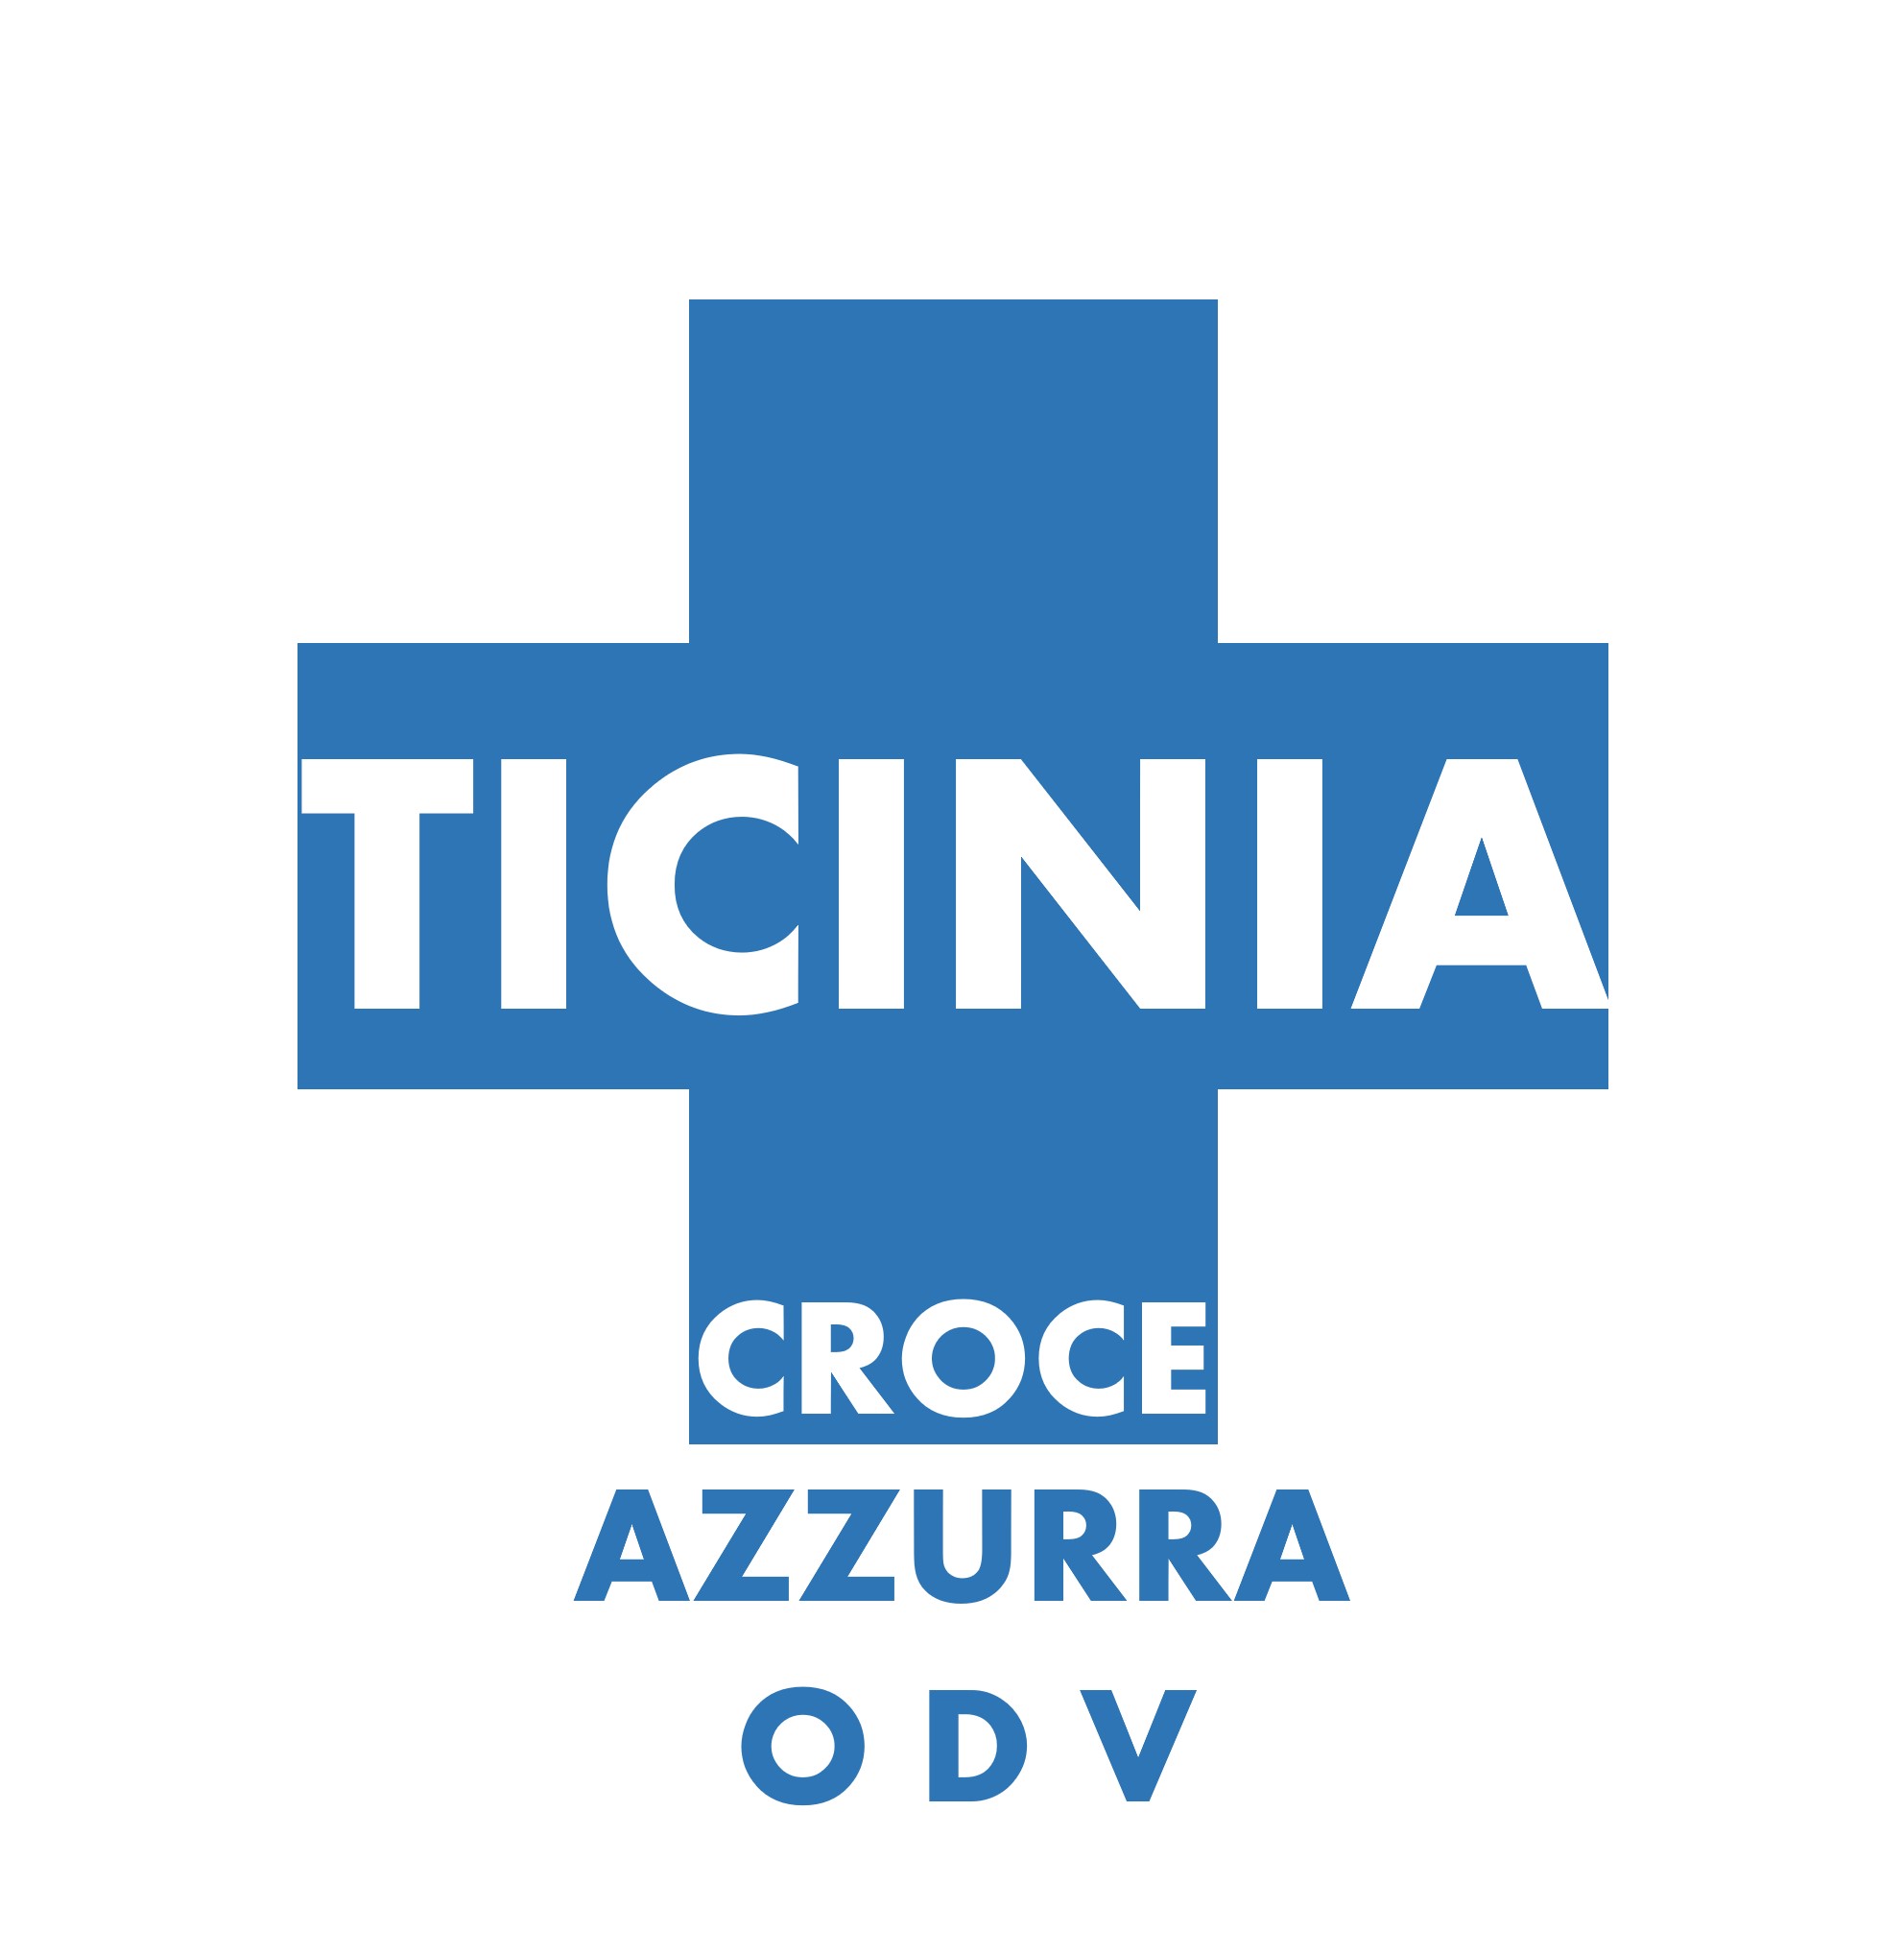 Archivio Storico Croce Azzurra Ticinia - Croce Azzurra Ticinia ODV - 2013 - Un segno di speranza